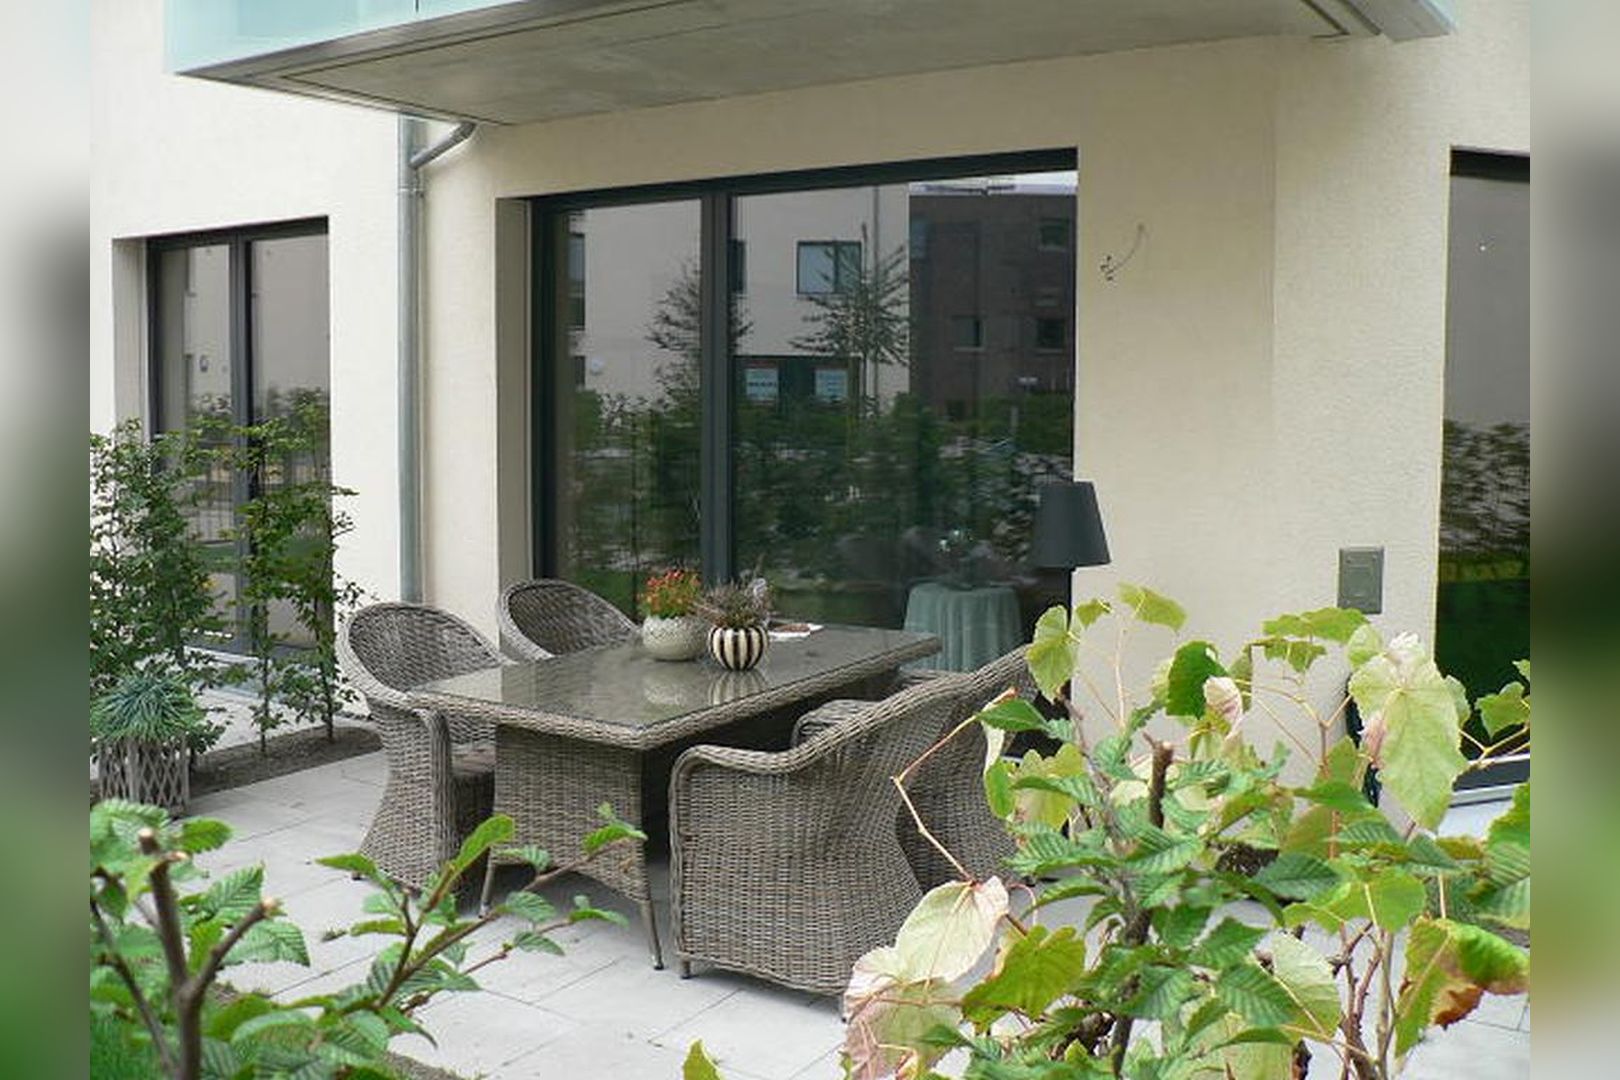 Immobilie Nr.Hilden 04 - 3-Raum-Maisonette mit 2 Schlafräumen u. sep. Küchen-Esszimmer, Terrasse u. kl. Garten - Bild 2.jpg